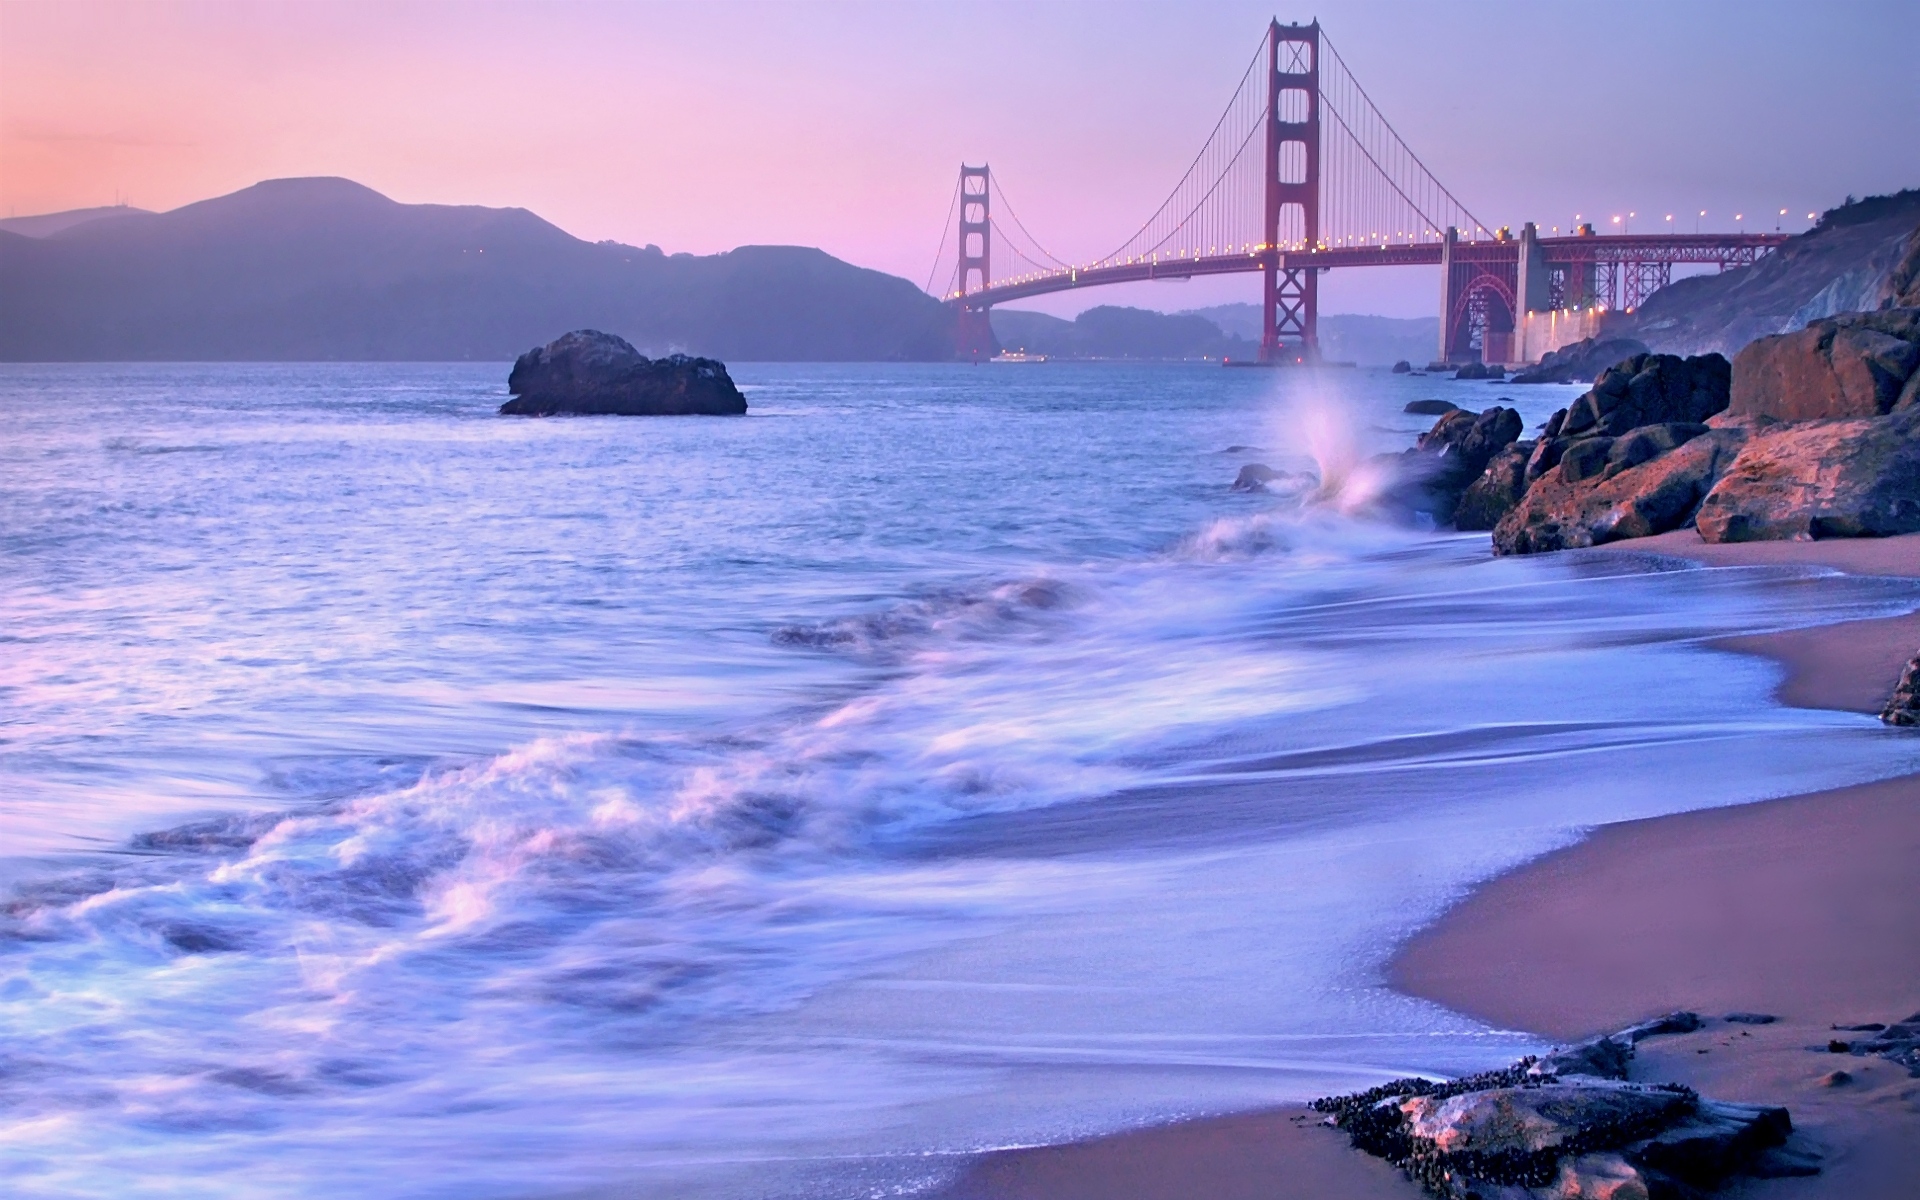 Картинки США, Калифорния, Сан-Франциско, мост, золотые ворота, проливы, пляж, камни, лаванда, фото и обои на рабочий стол